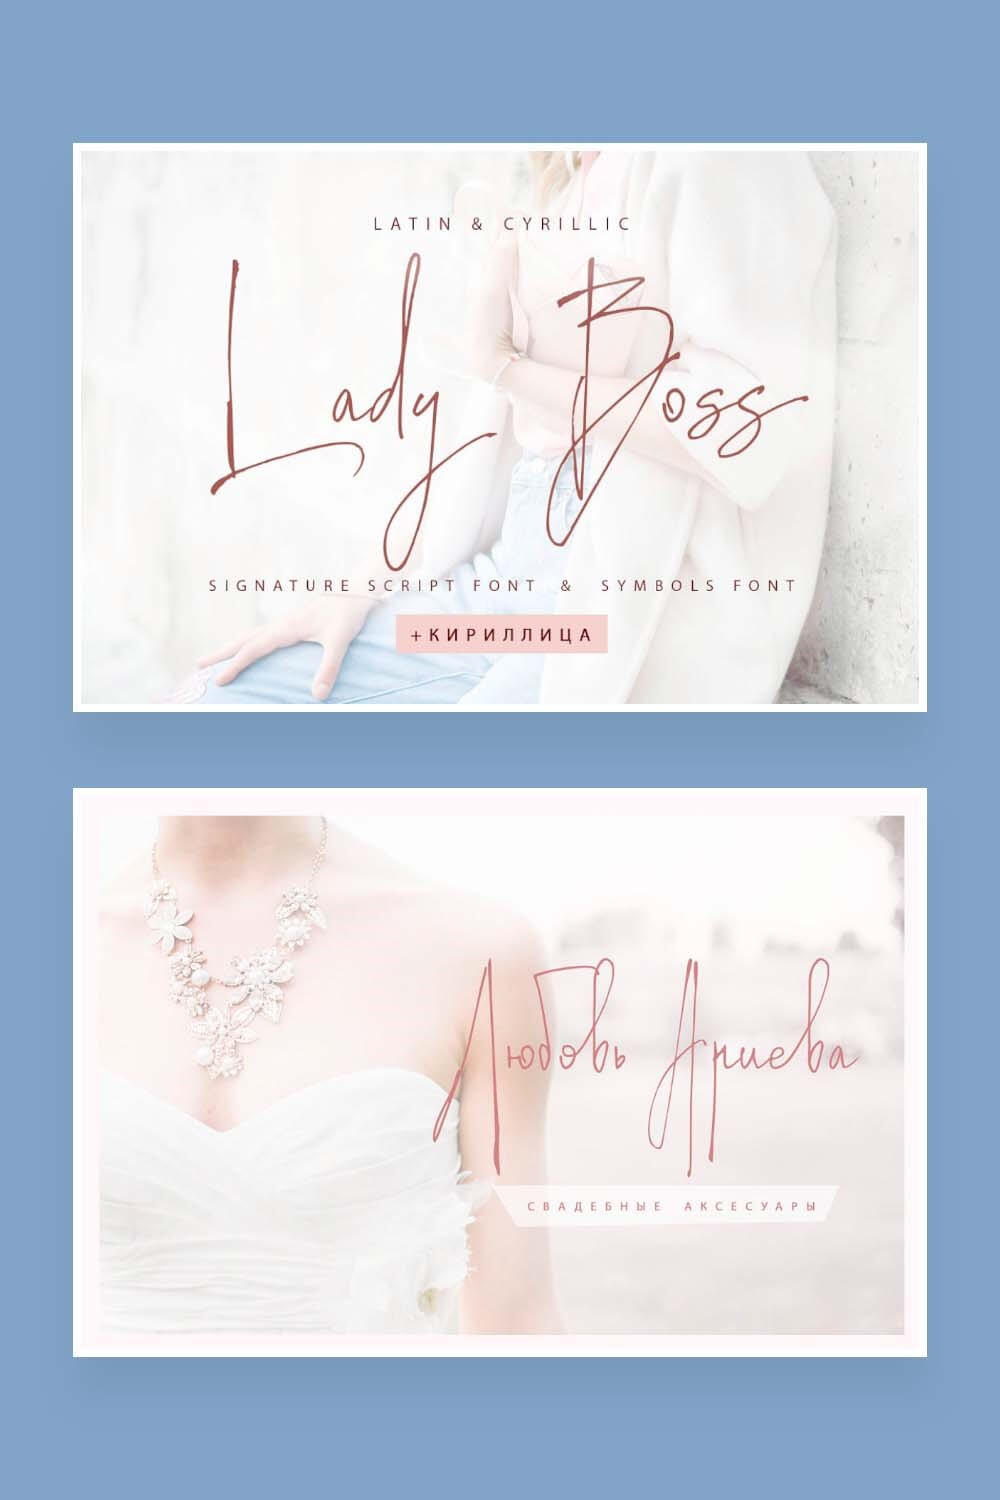 Latin & Cyrillic, Lady Boss, signature script font & symbols font, wedding accessories.